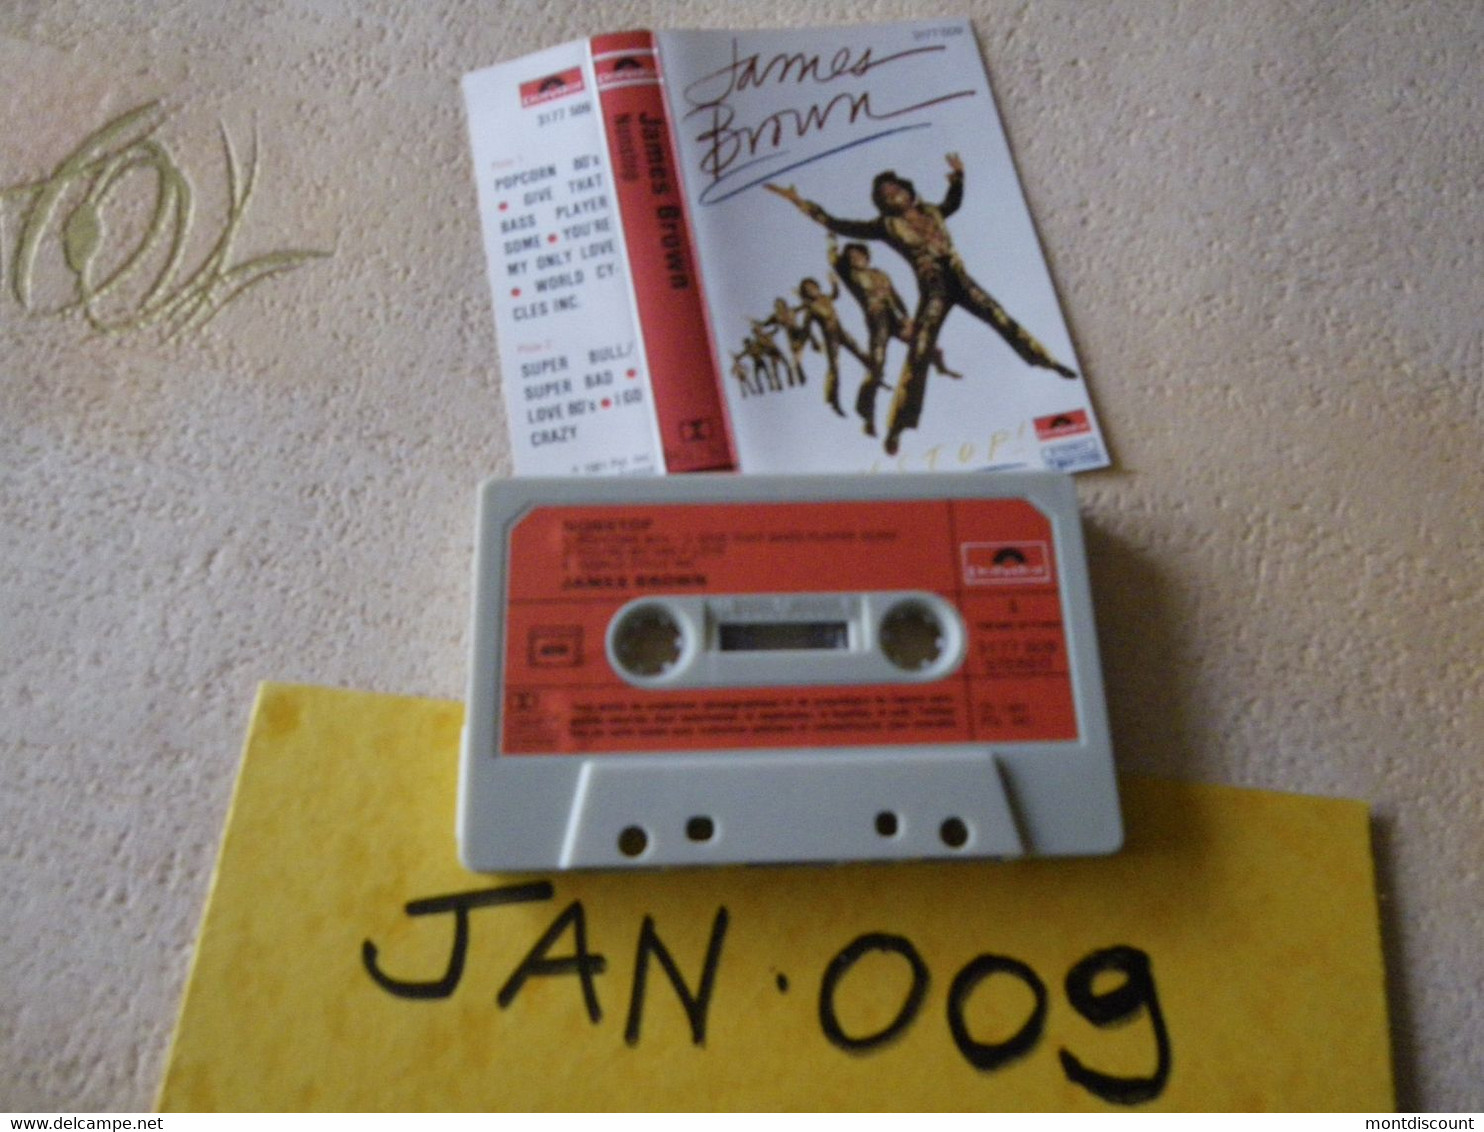 JAMES BROWN K7 AUDIO VOIR PHOTO...ET REGARDEZ LES AUTRES (PLUSIEURS) (JAN 009) - Cassettes Audio